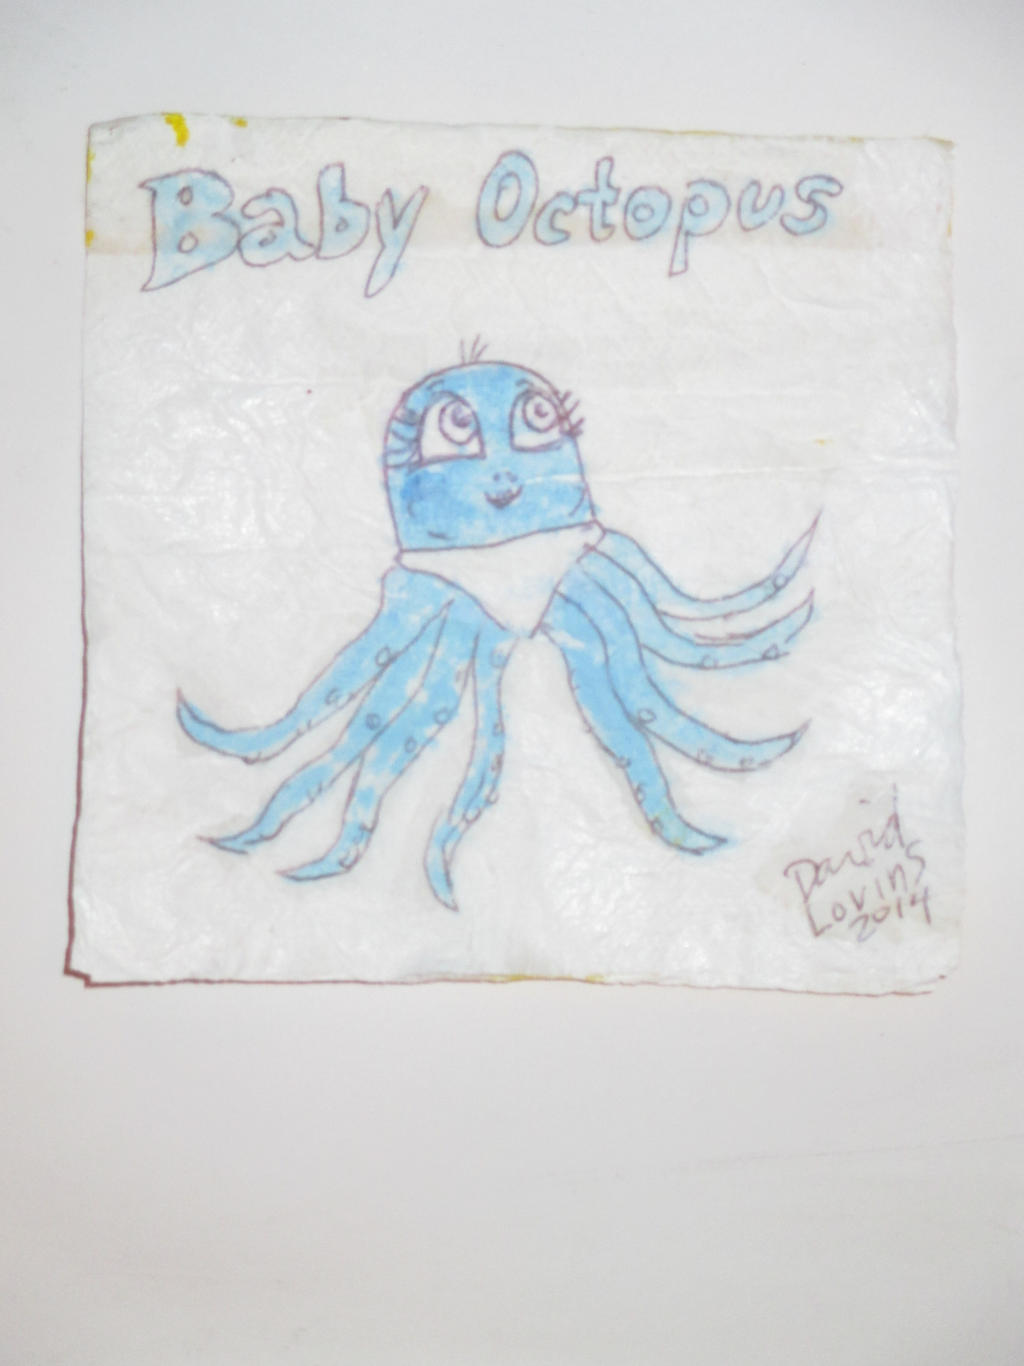 Baby Octopus - napkin art